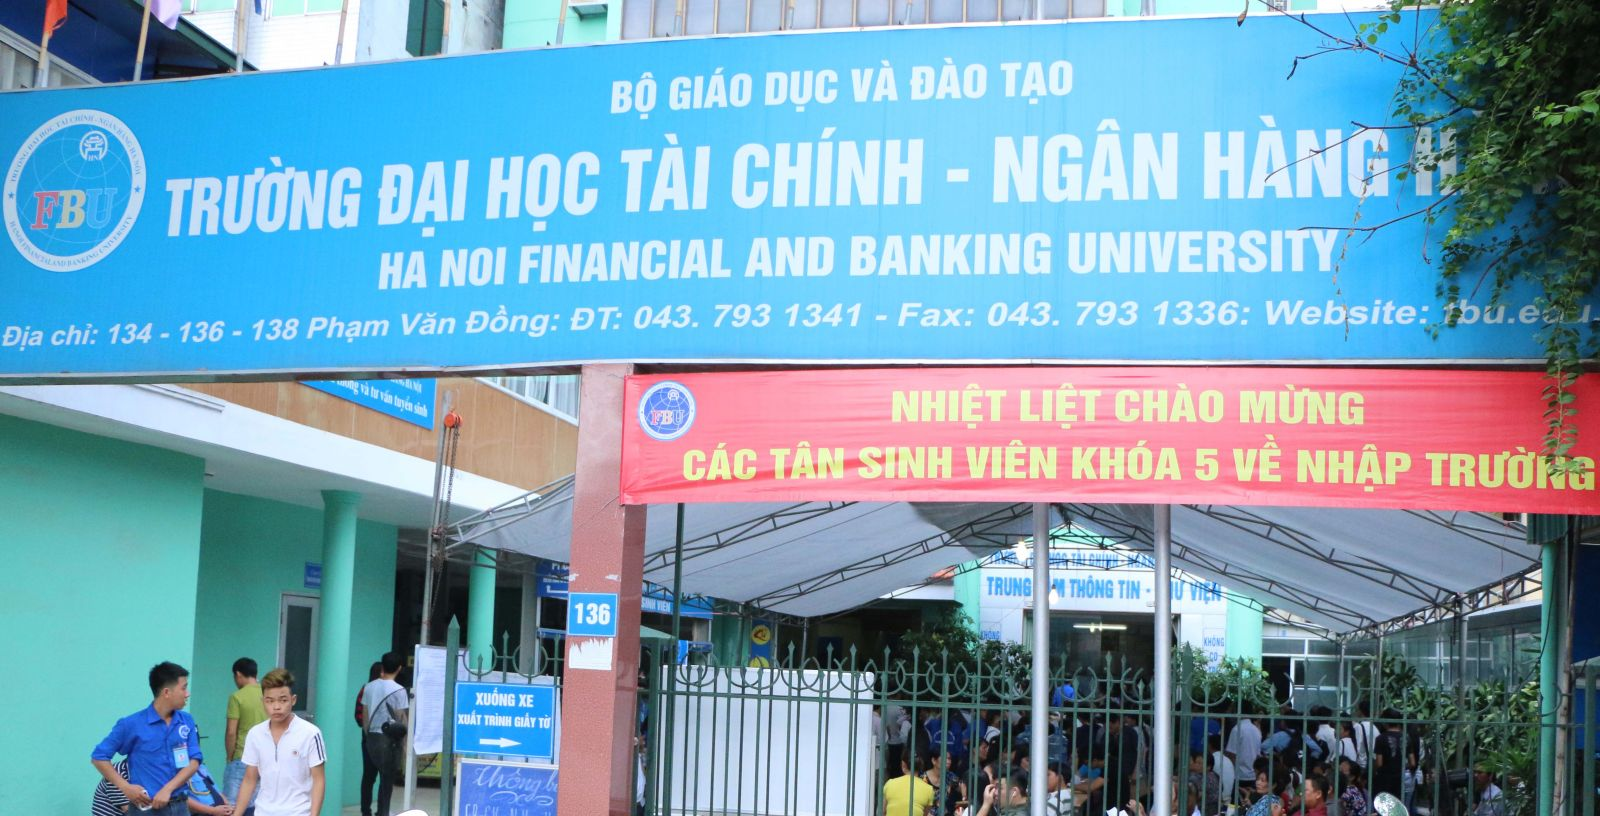 Đại học Tài chính Ngân hàng Hà Nội